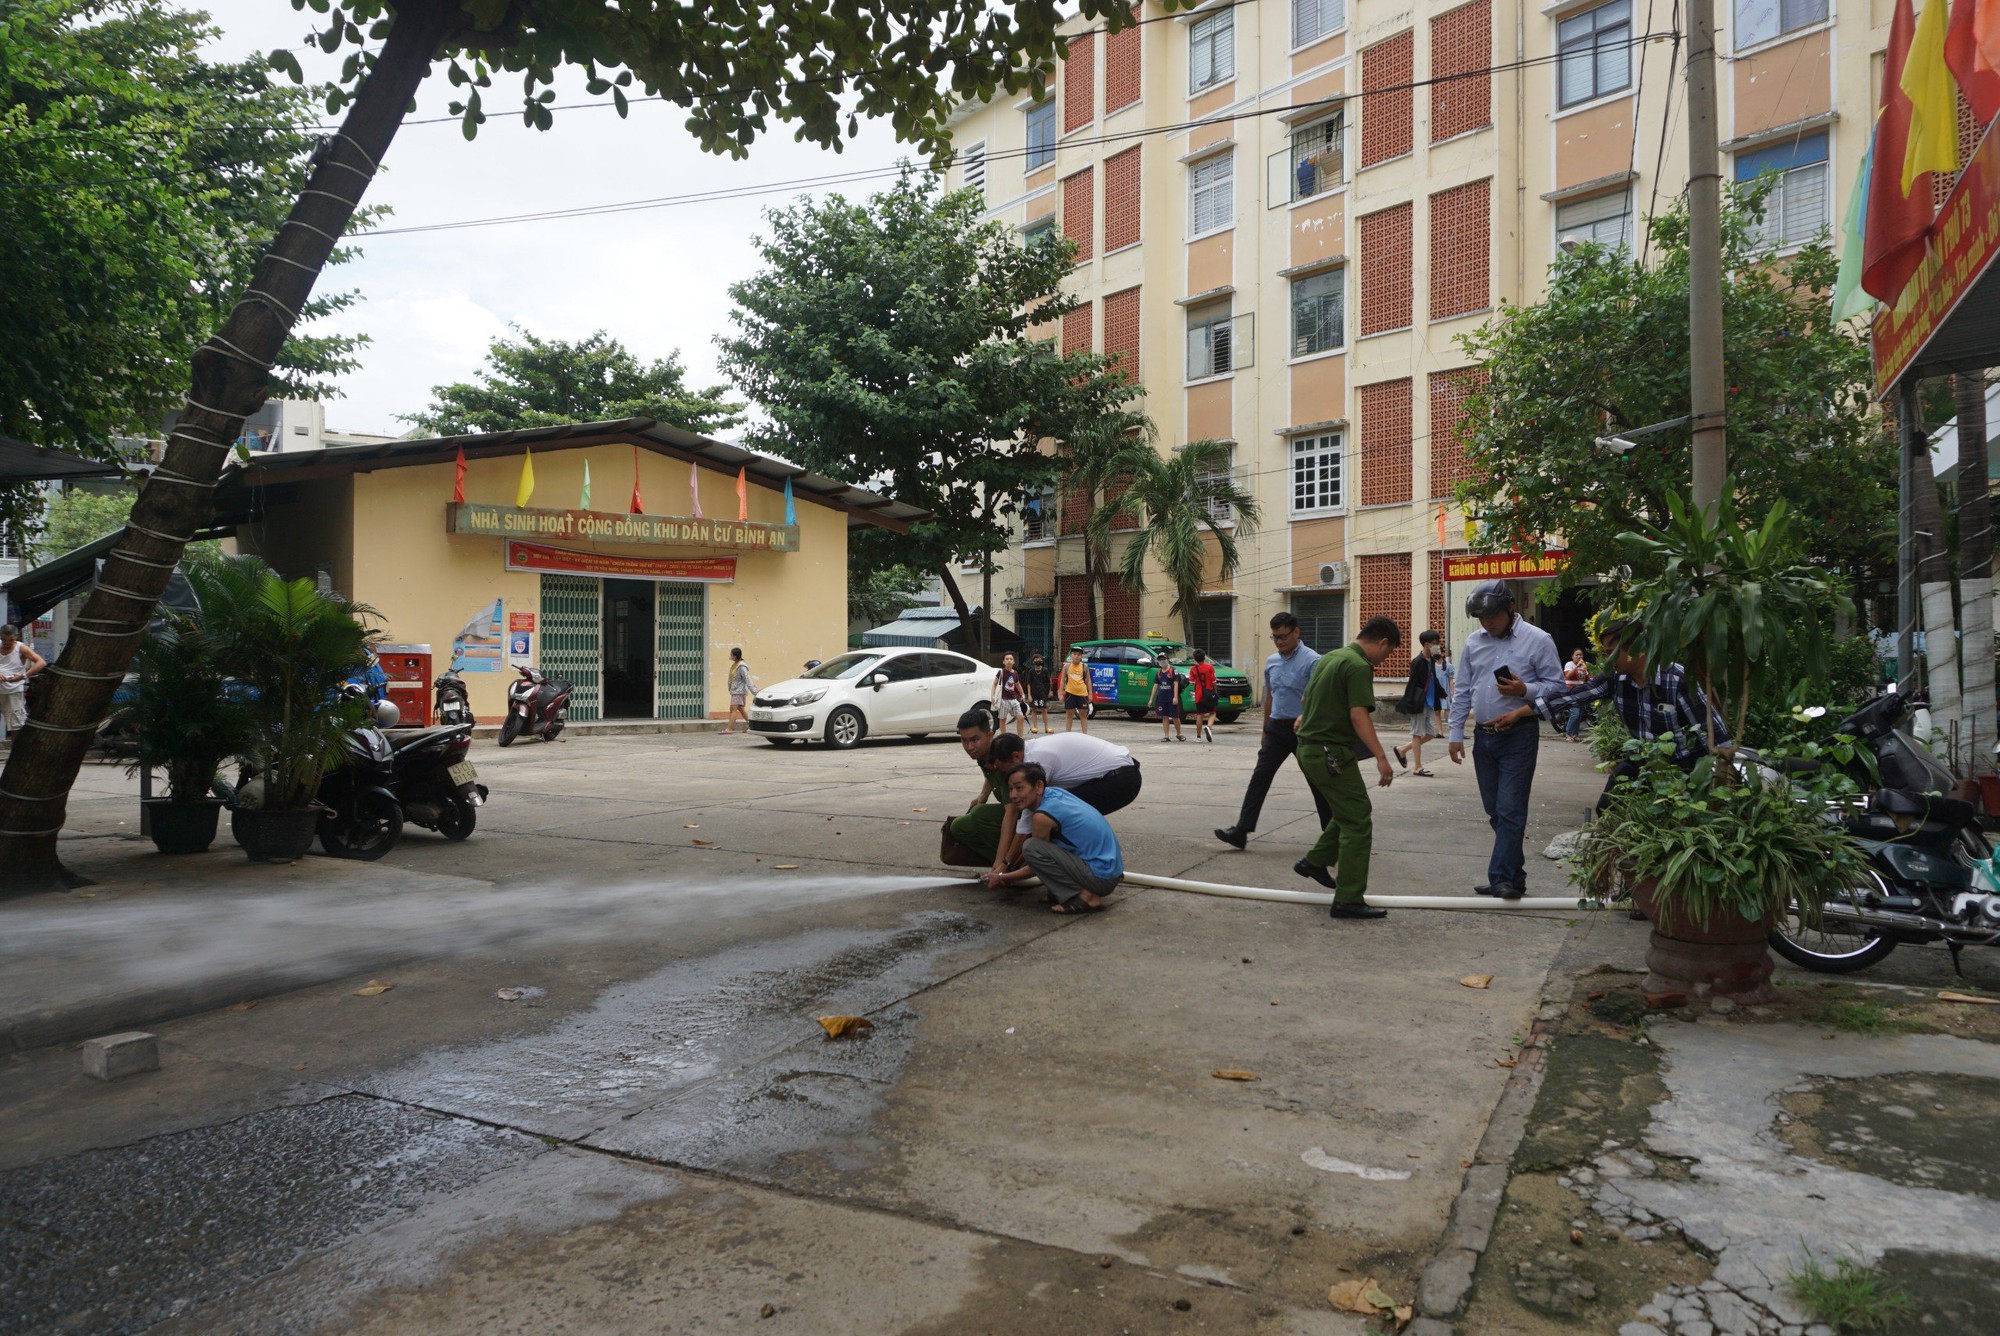 Kiểm tra PCCC của hàng nghìn chung cư, nhà trọ tại Đà Nẵng  - Ảnh 3.